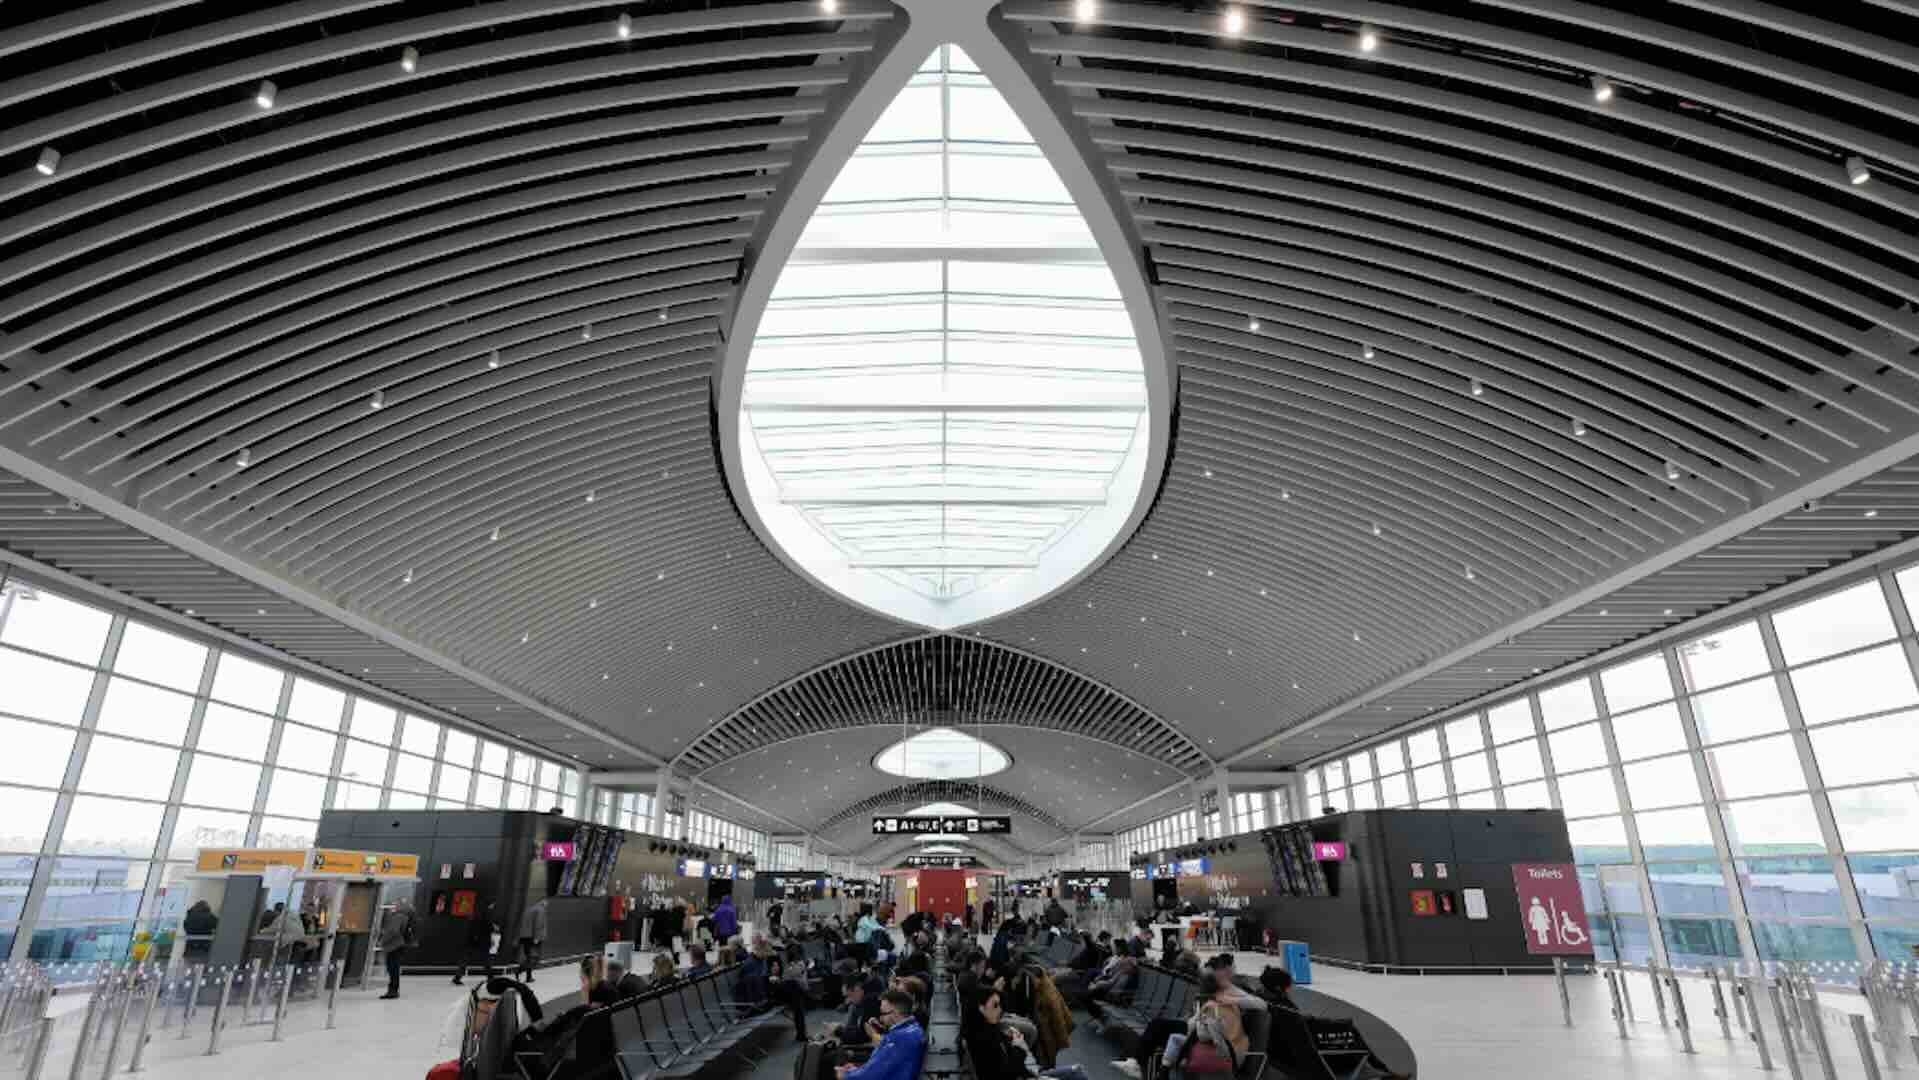 Aeroporto di Roma Fiumicino migliore in Europa. Premio Airport Service Quality (ASQ) Award